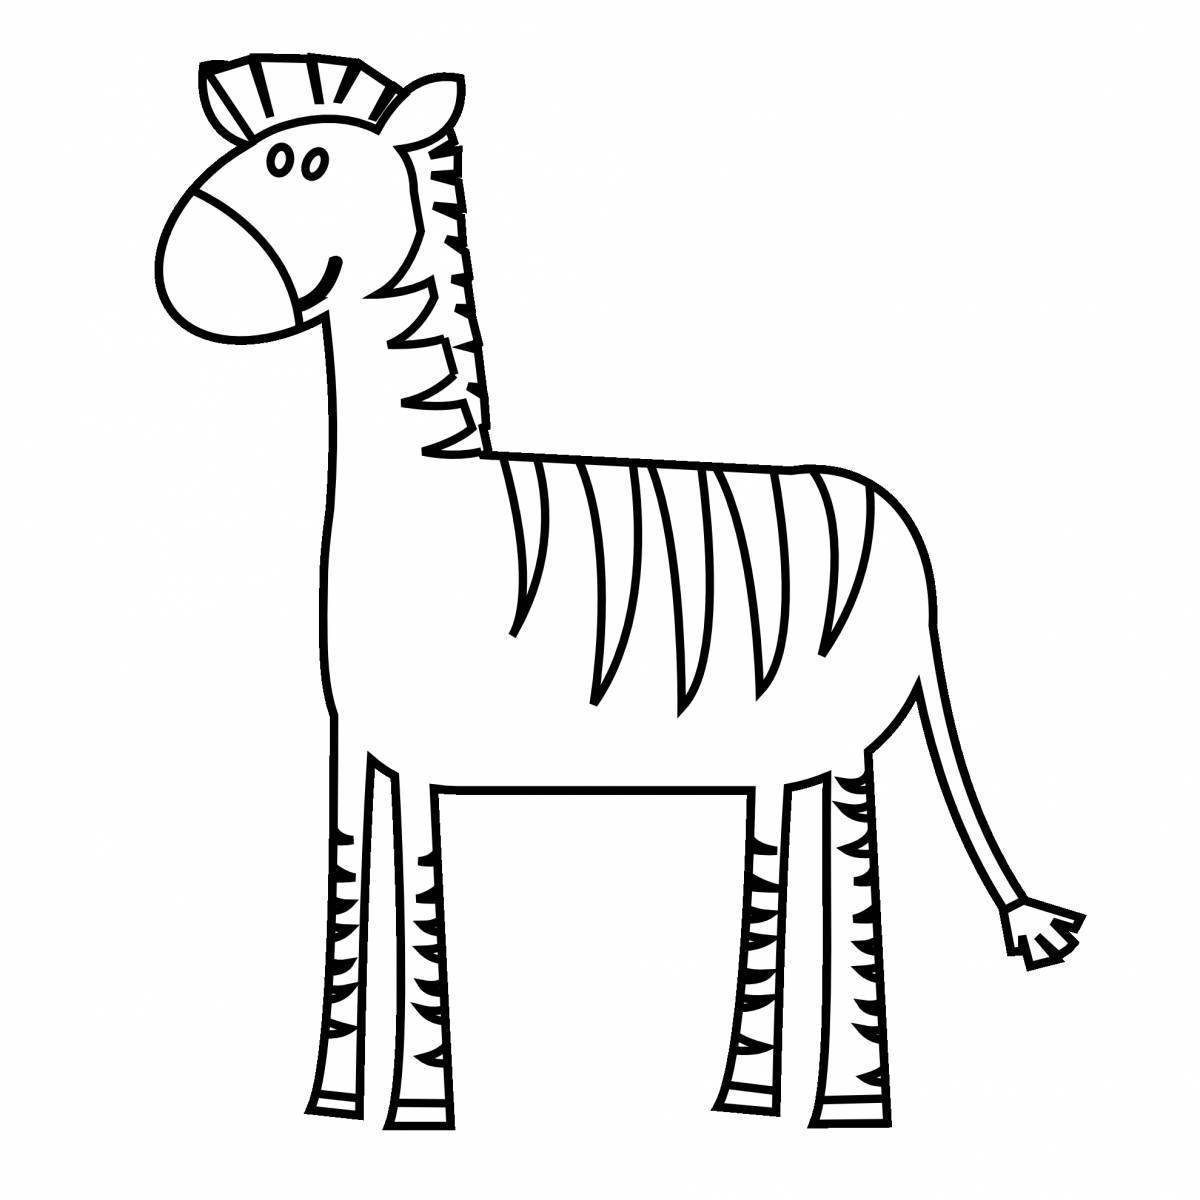 Величественная зебра без полос